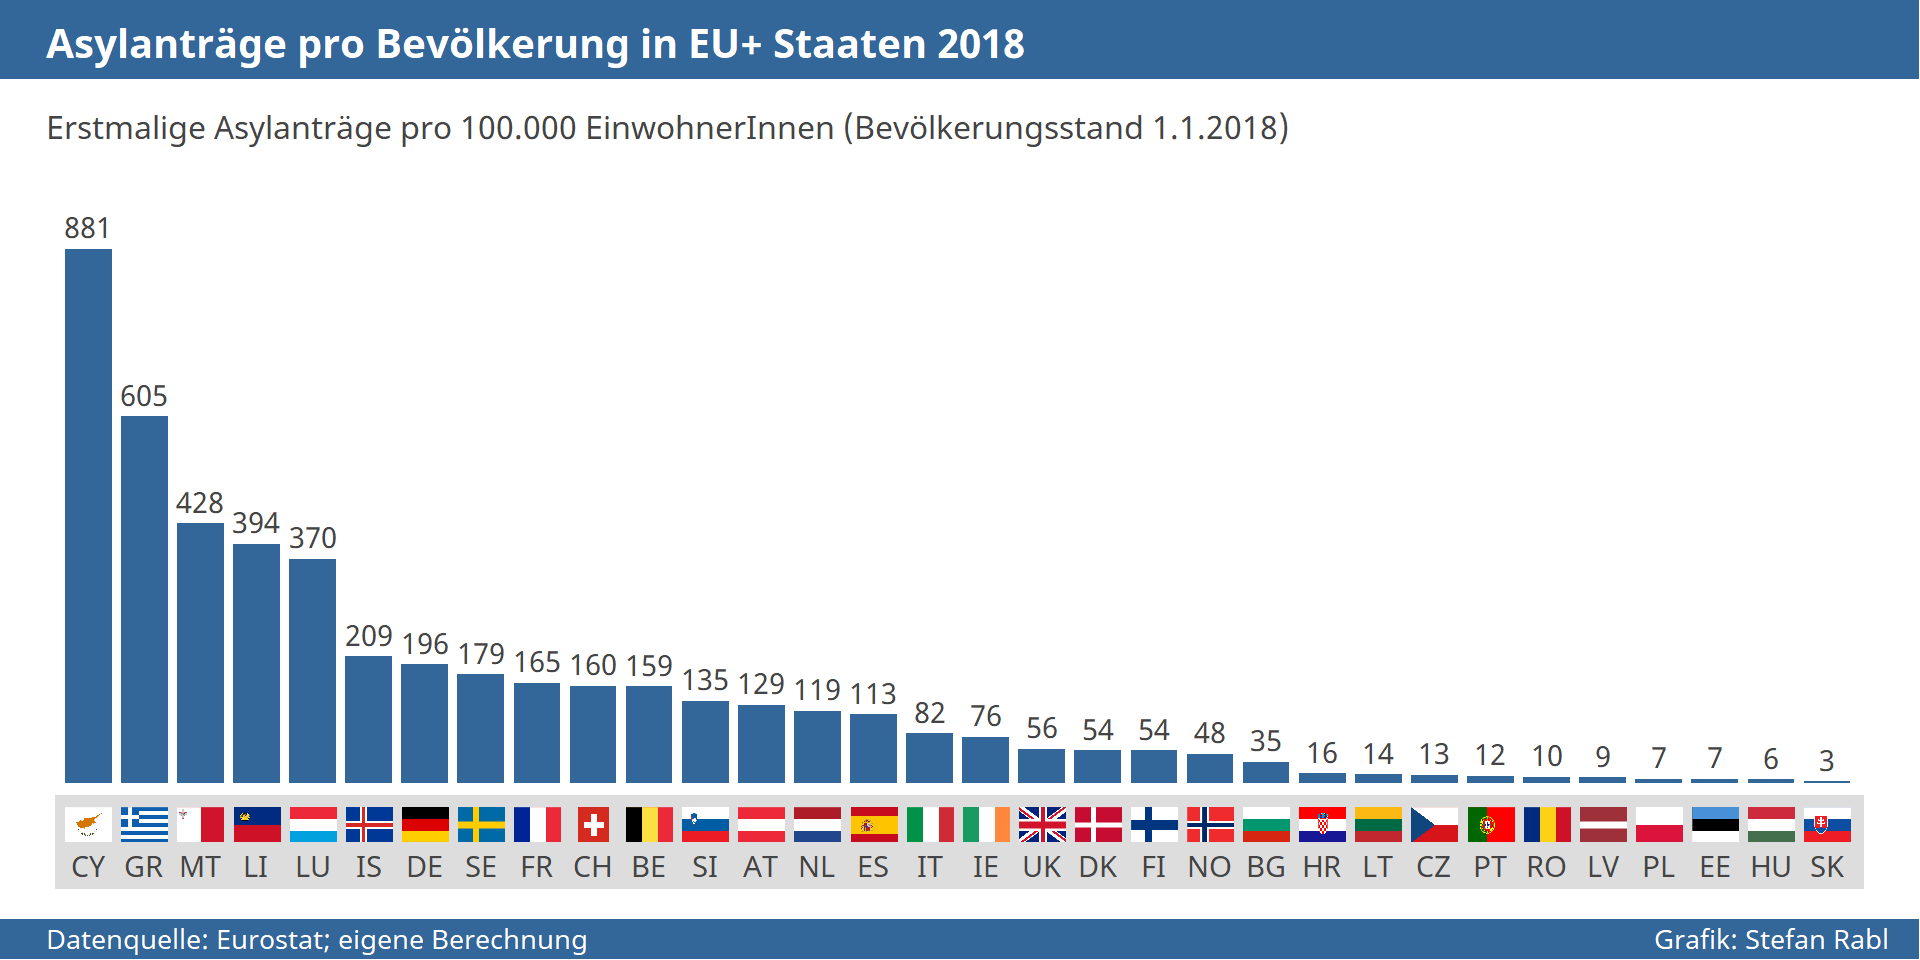 Grafik: Monatliche Asylantragszahlen pro Bevölkerung in den einzelnen EU+ Staaten 2018